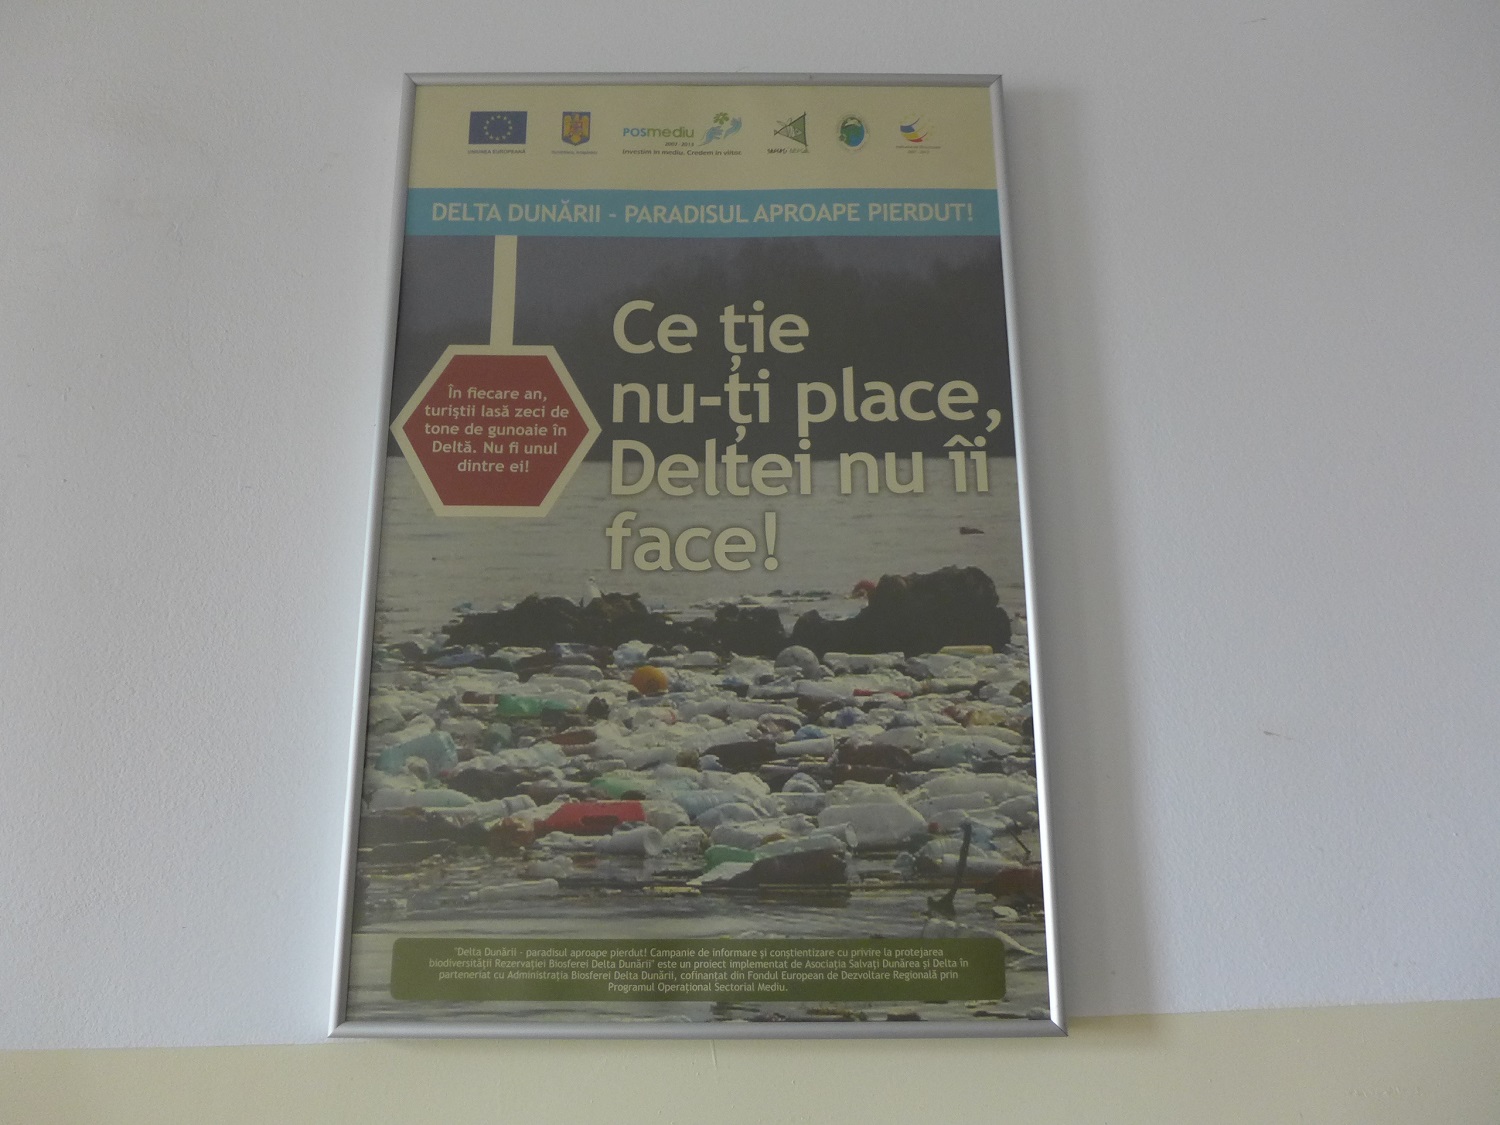 Une affiche pour sensibiliser contre la pollution dans le delta : « Ce qui ne te plaît pas à toi, ne le fais pas au Delta ! » « Chaque année, les touristes laissent des tonnes d’ordures dans le Delta. Ne sois pas l’un d’entre eux », est-il écrit.